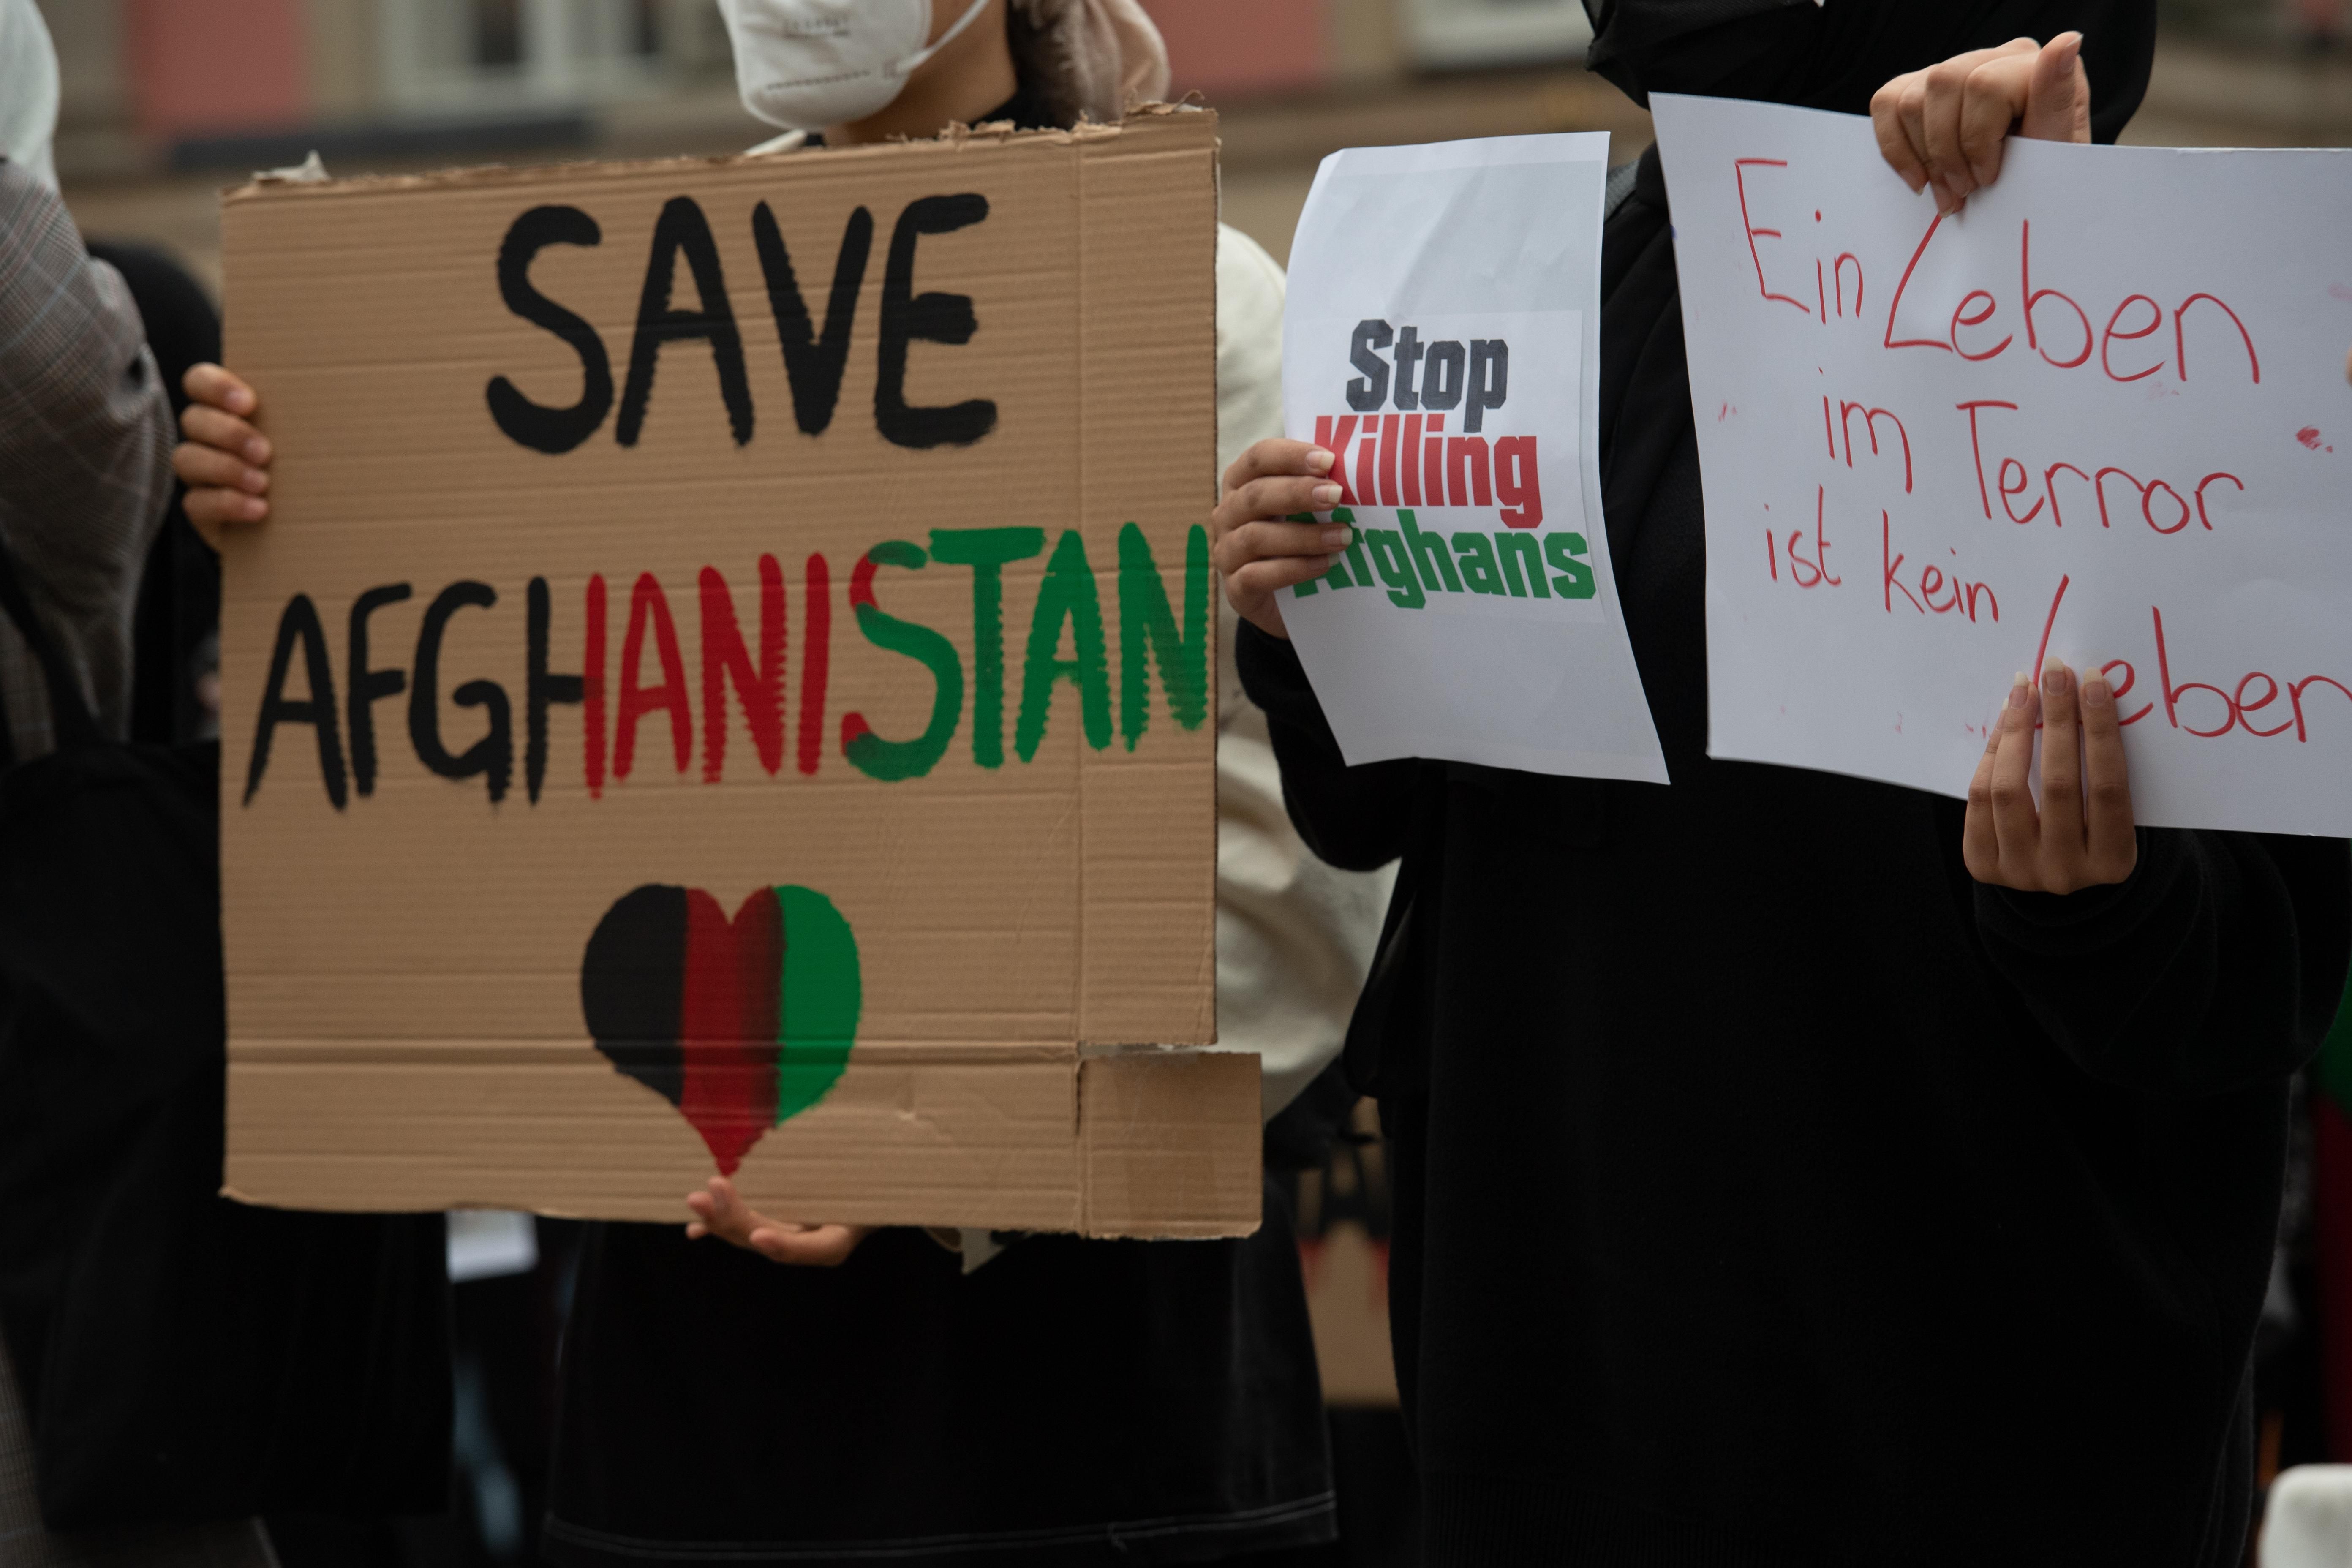 ЄС визнав перемогу "Талібану" у війні в Афганістані - 24 Канал